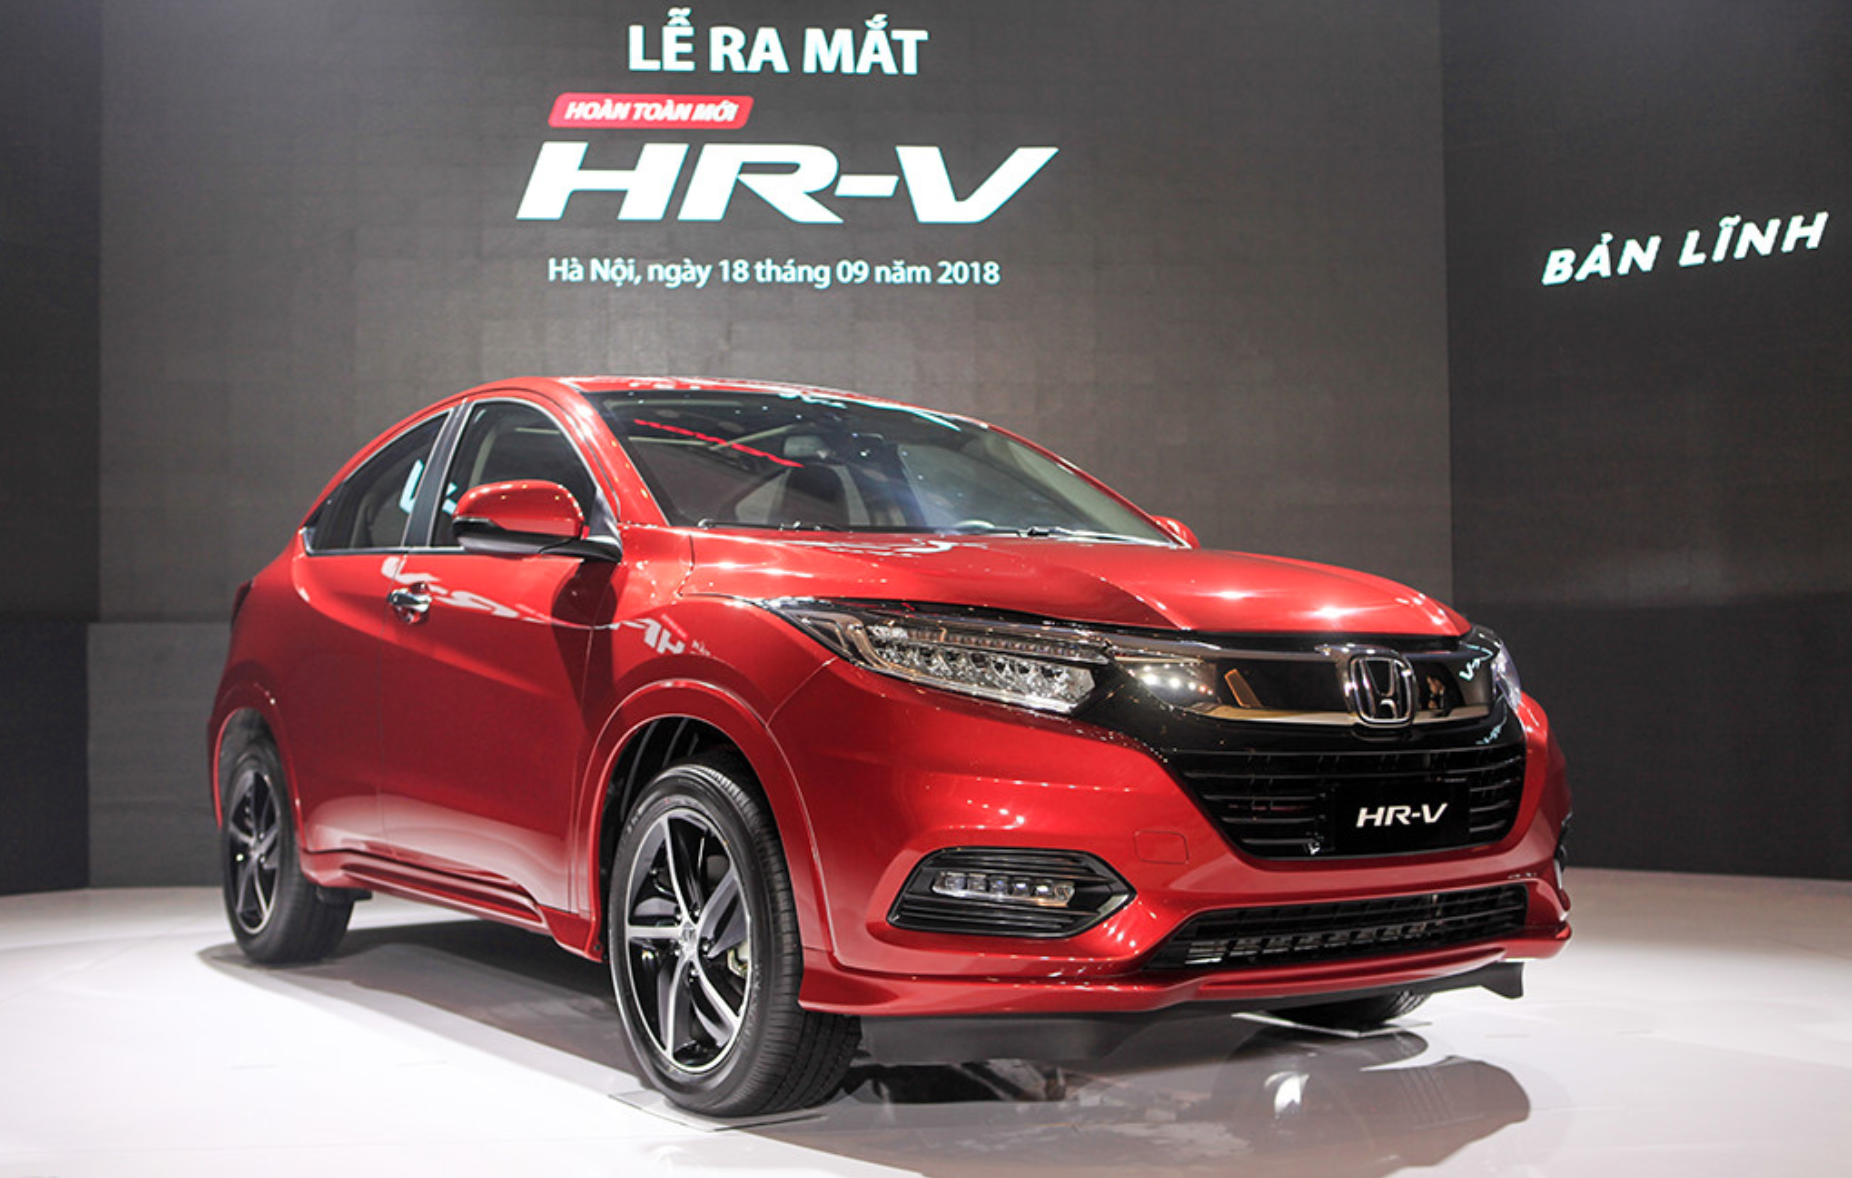 Honda HRV giá dưới 900 triệu đồng đã có mặt tại đại lý ở Hà Nội